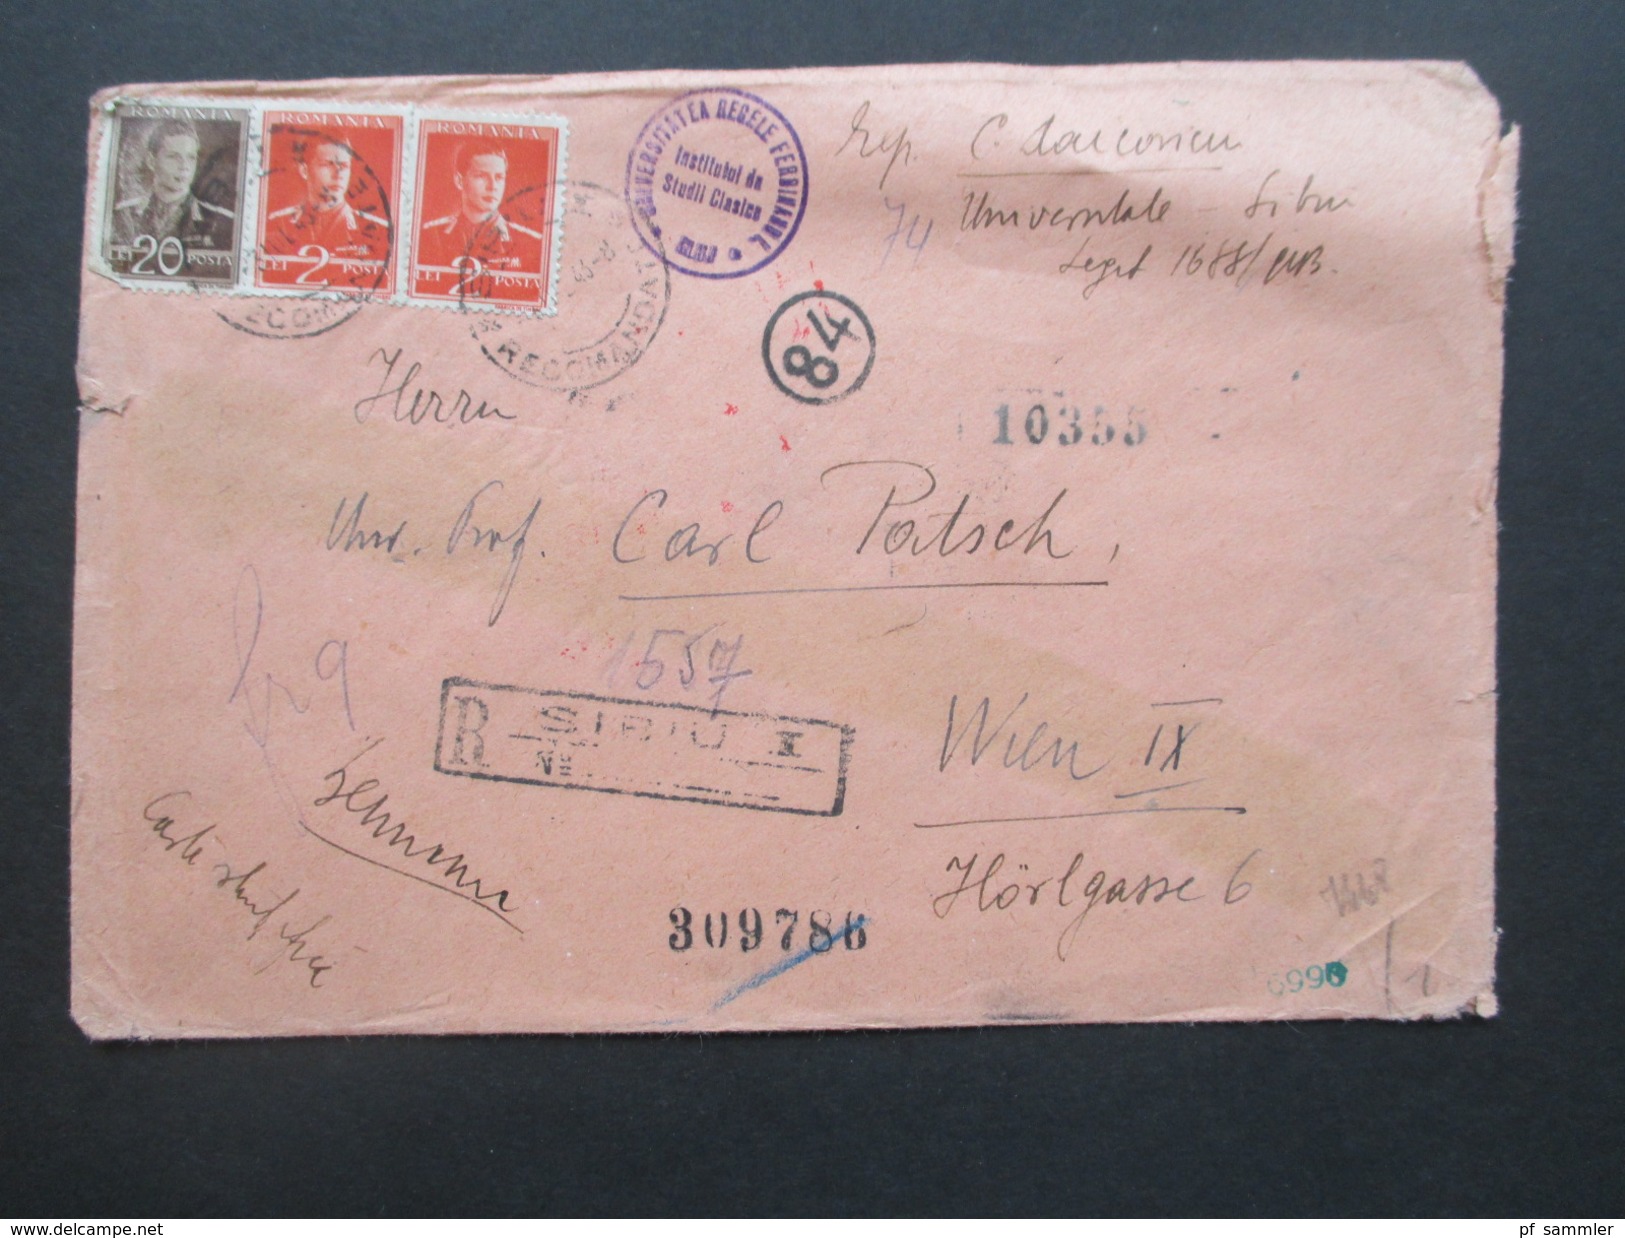 Rumänien 1943 Zensurbeleg/R-Brief Sibu-Wien. Viele Vermerke / Mehrfachzensur Der Wehrmacht! Institutul Da Studil Clasico - World War 2 Letters